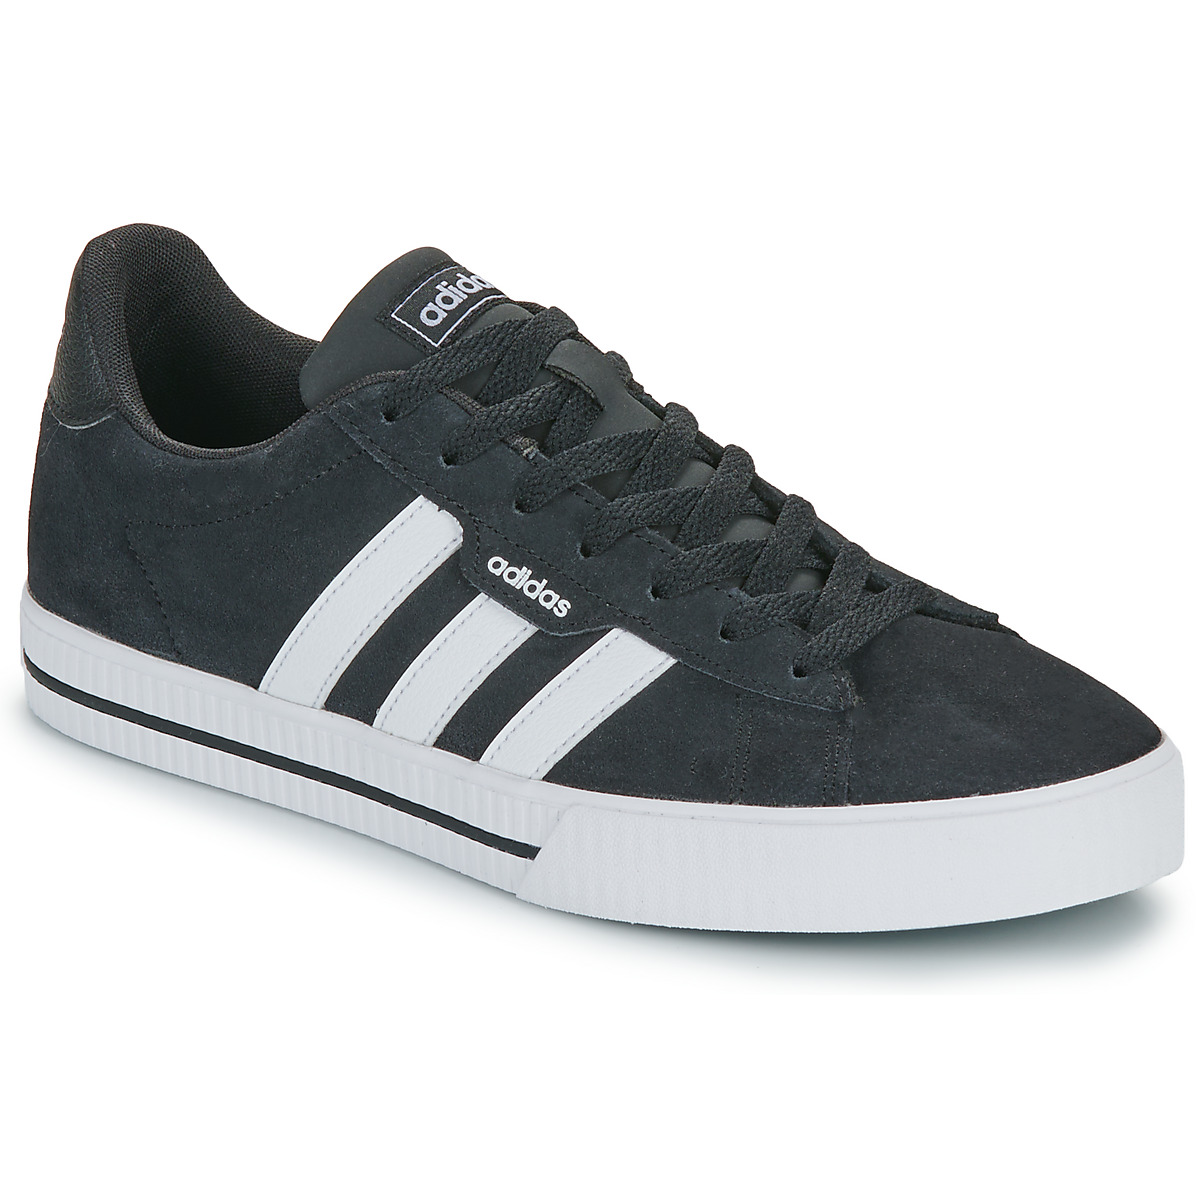 Adidas Daily 3.0 heren sneakers zwart/wit - Maat 44 - Echt leer